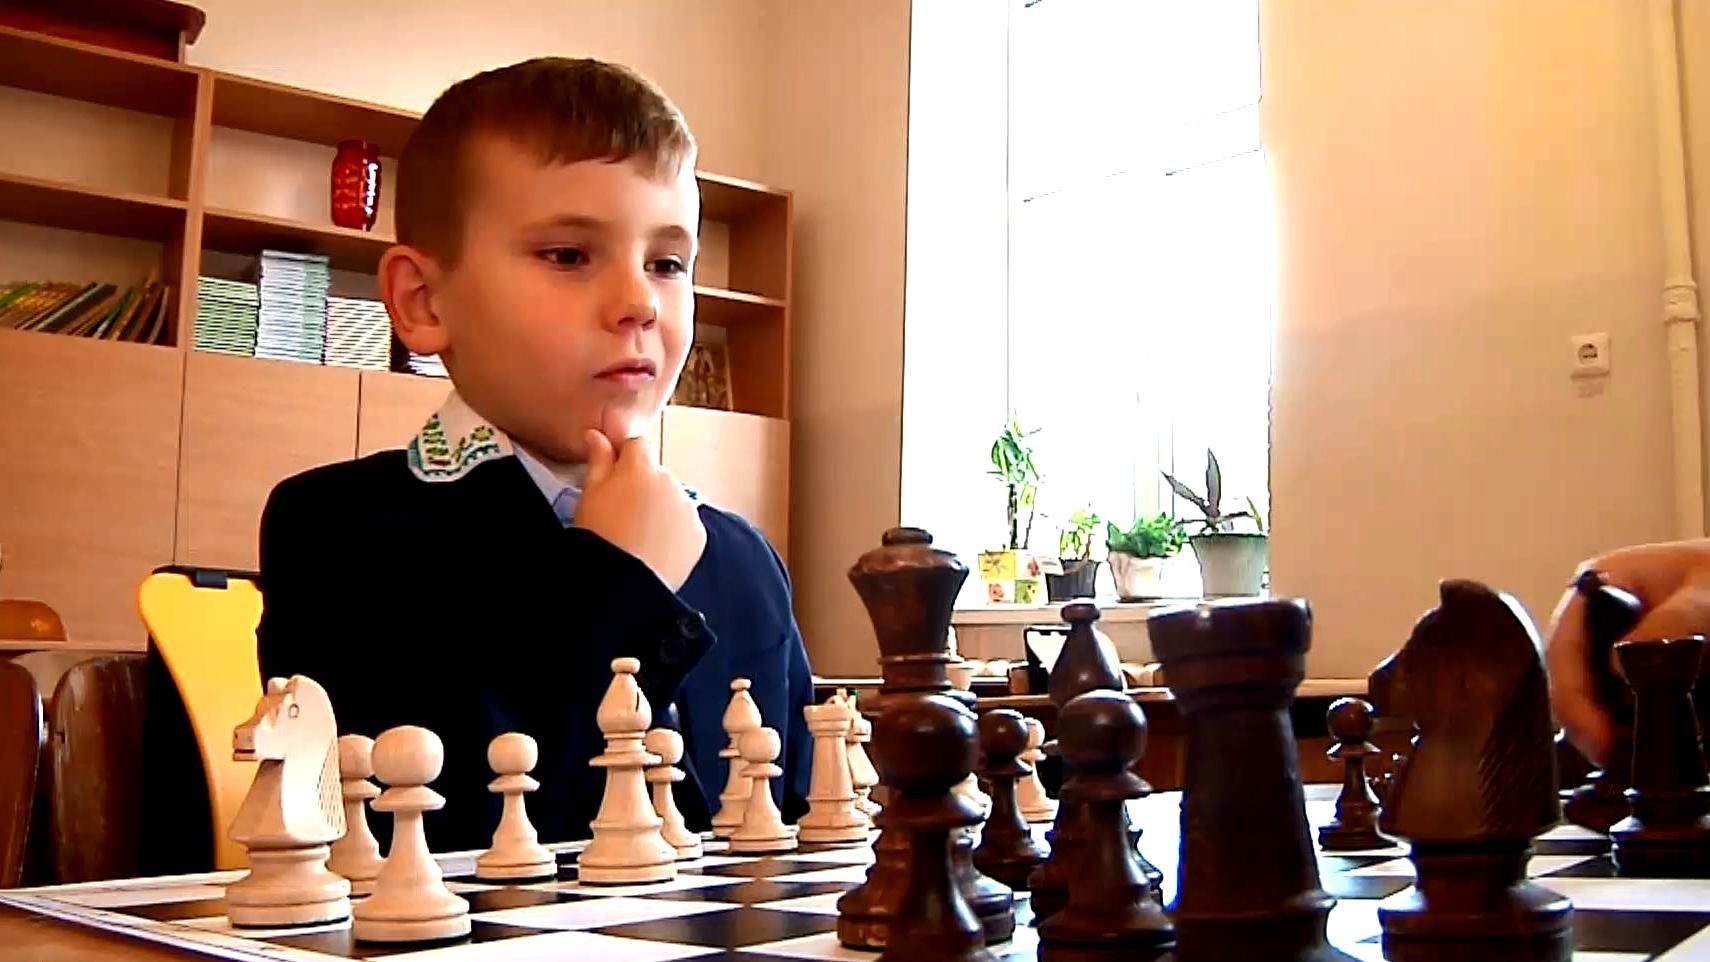 Світова чемпіонка безкоштовно навчає дітей грі в шахи